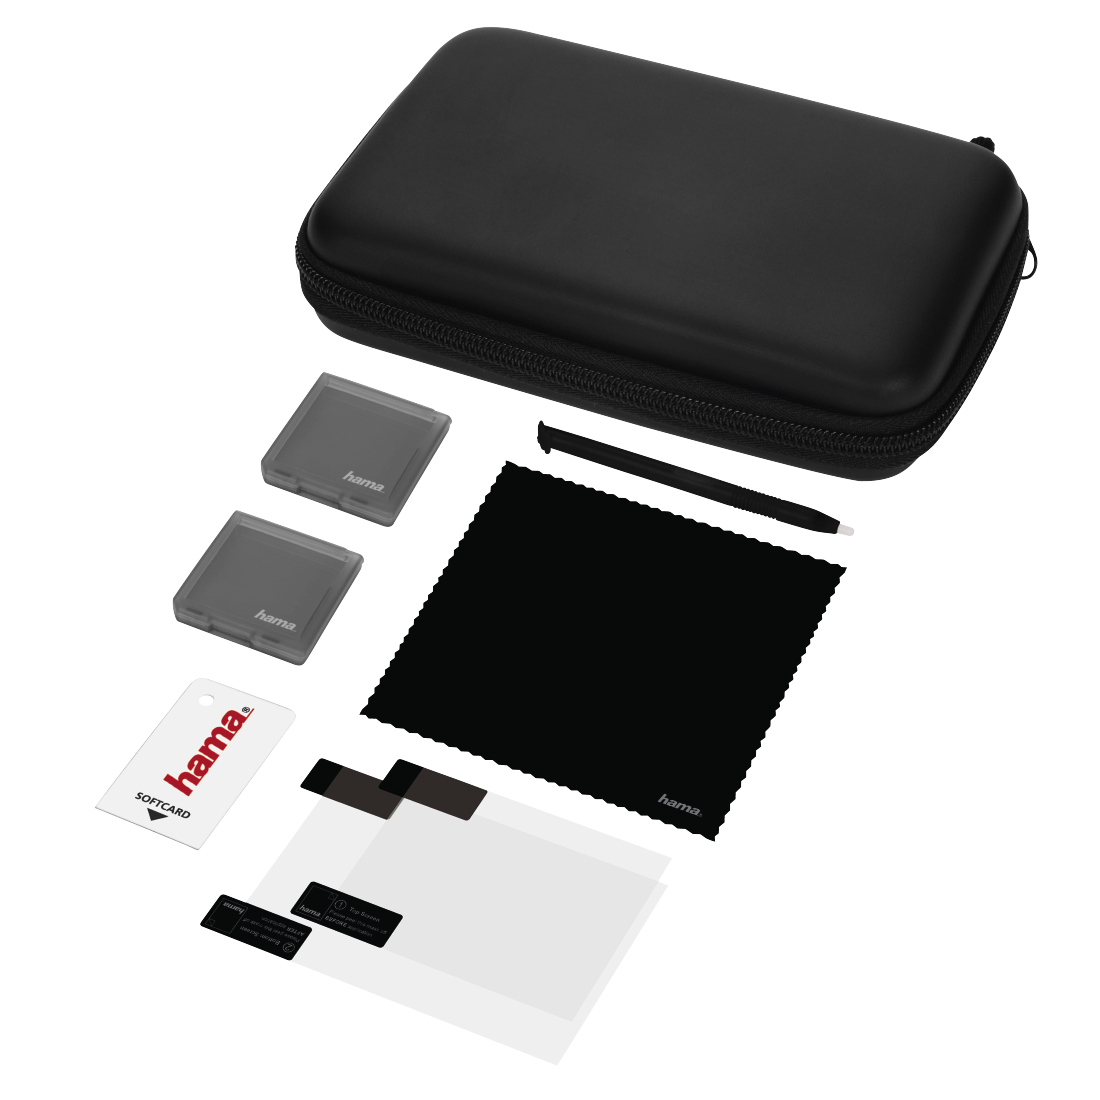 Hama 8in1 Accessory Kit Basic (Nintendo 3DS tok és tartozékok) 00053446 - Nintendo 3DS Kiegészítők